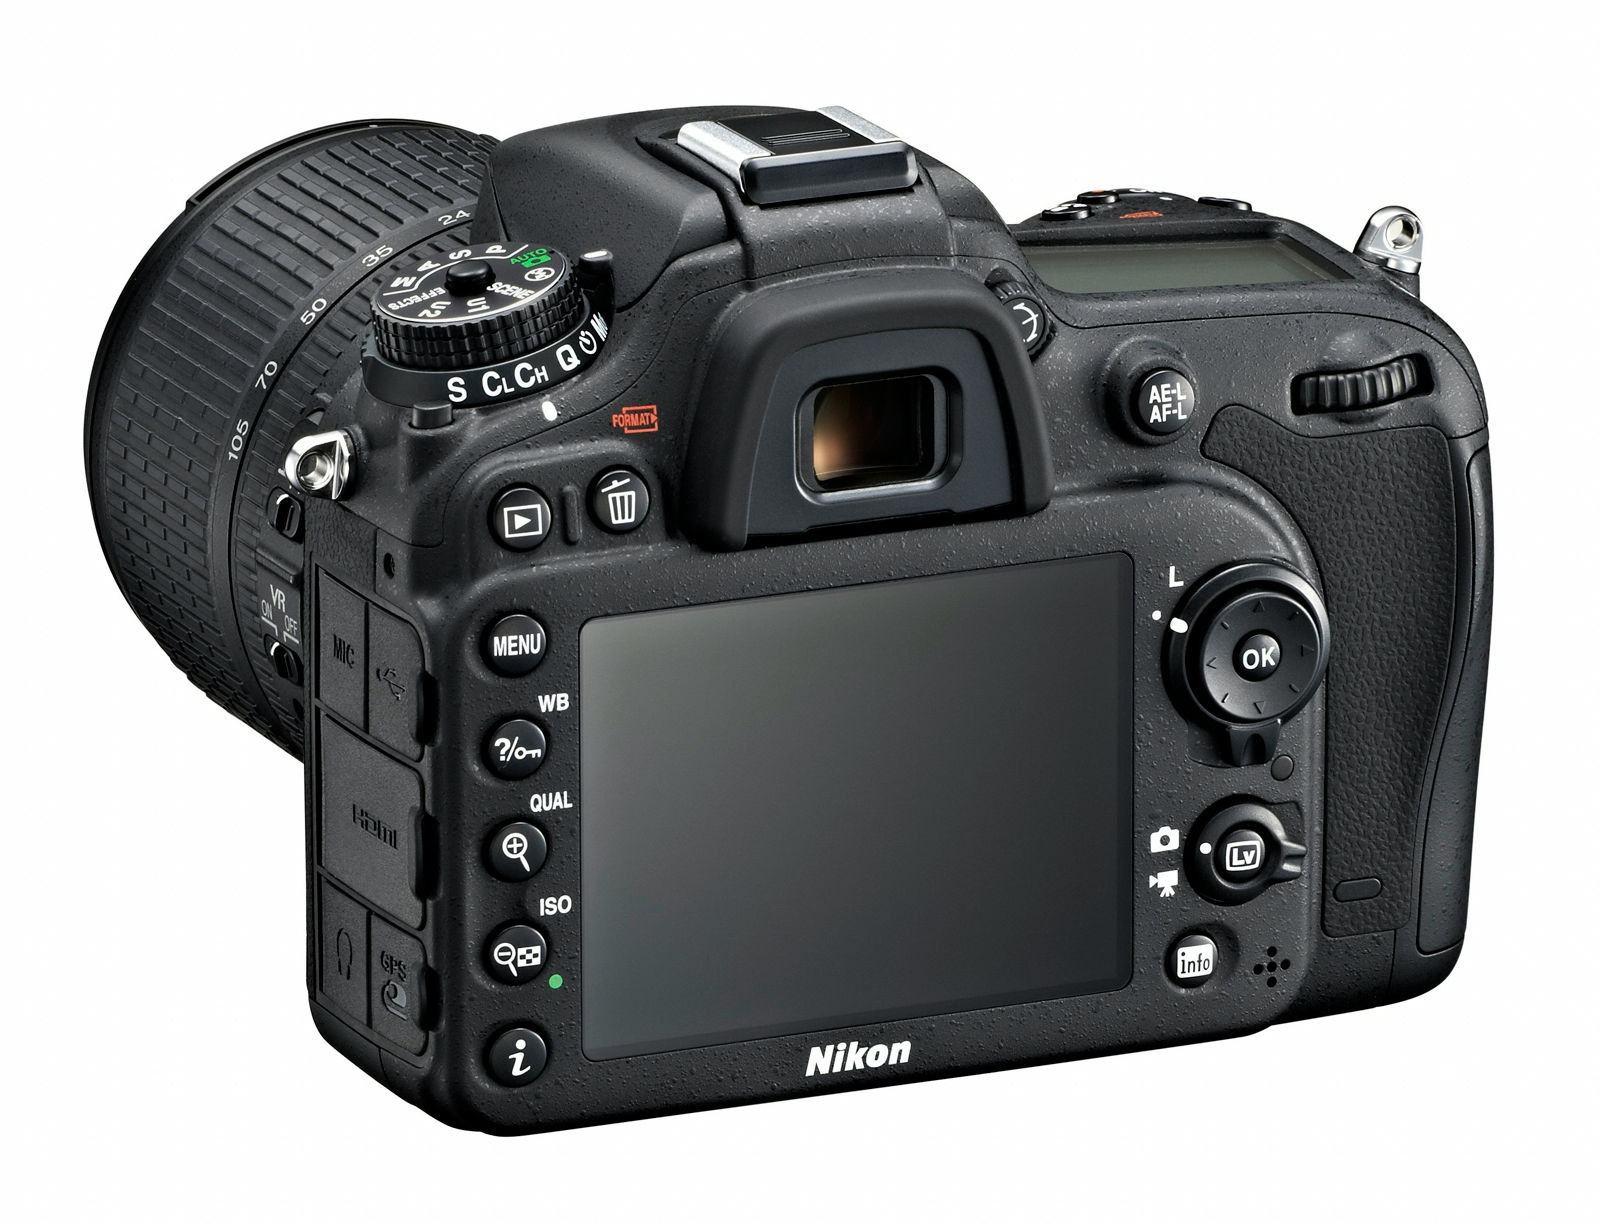 ニコンがデジタル一眼レフカメラ「D7100」を3月発売予定、13万円台から 